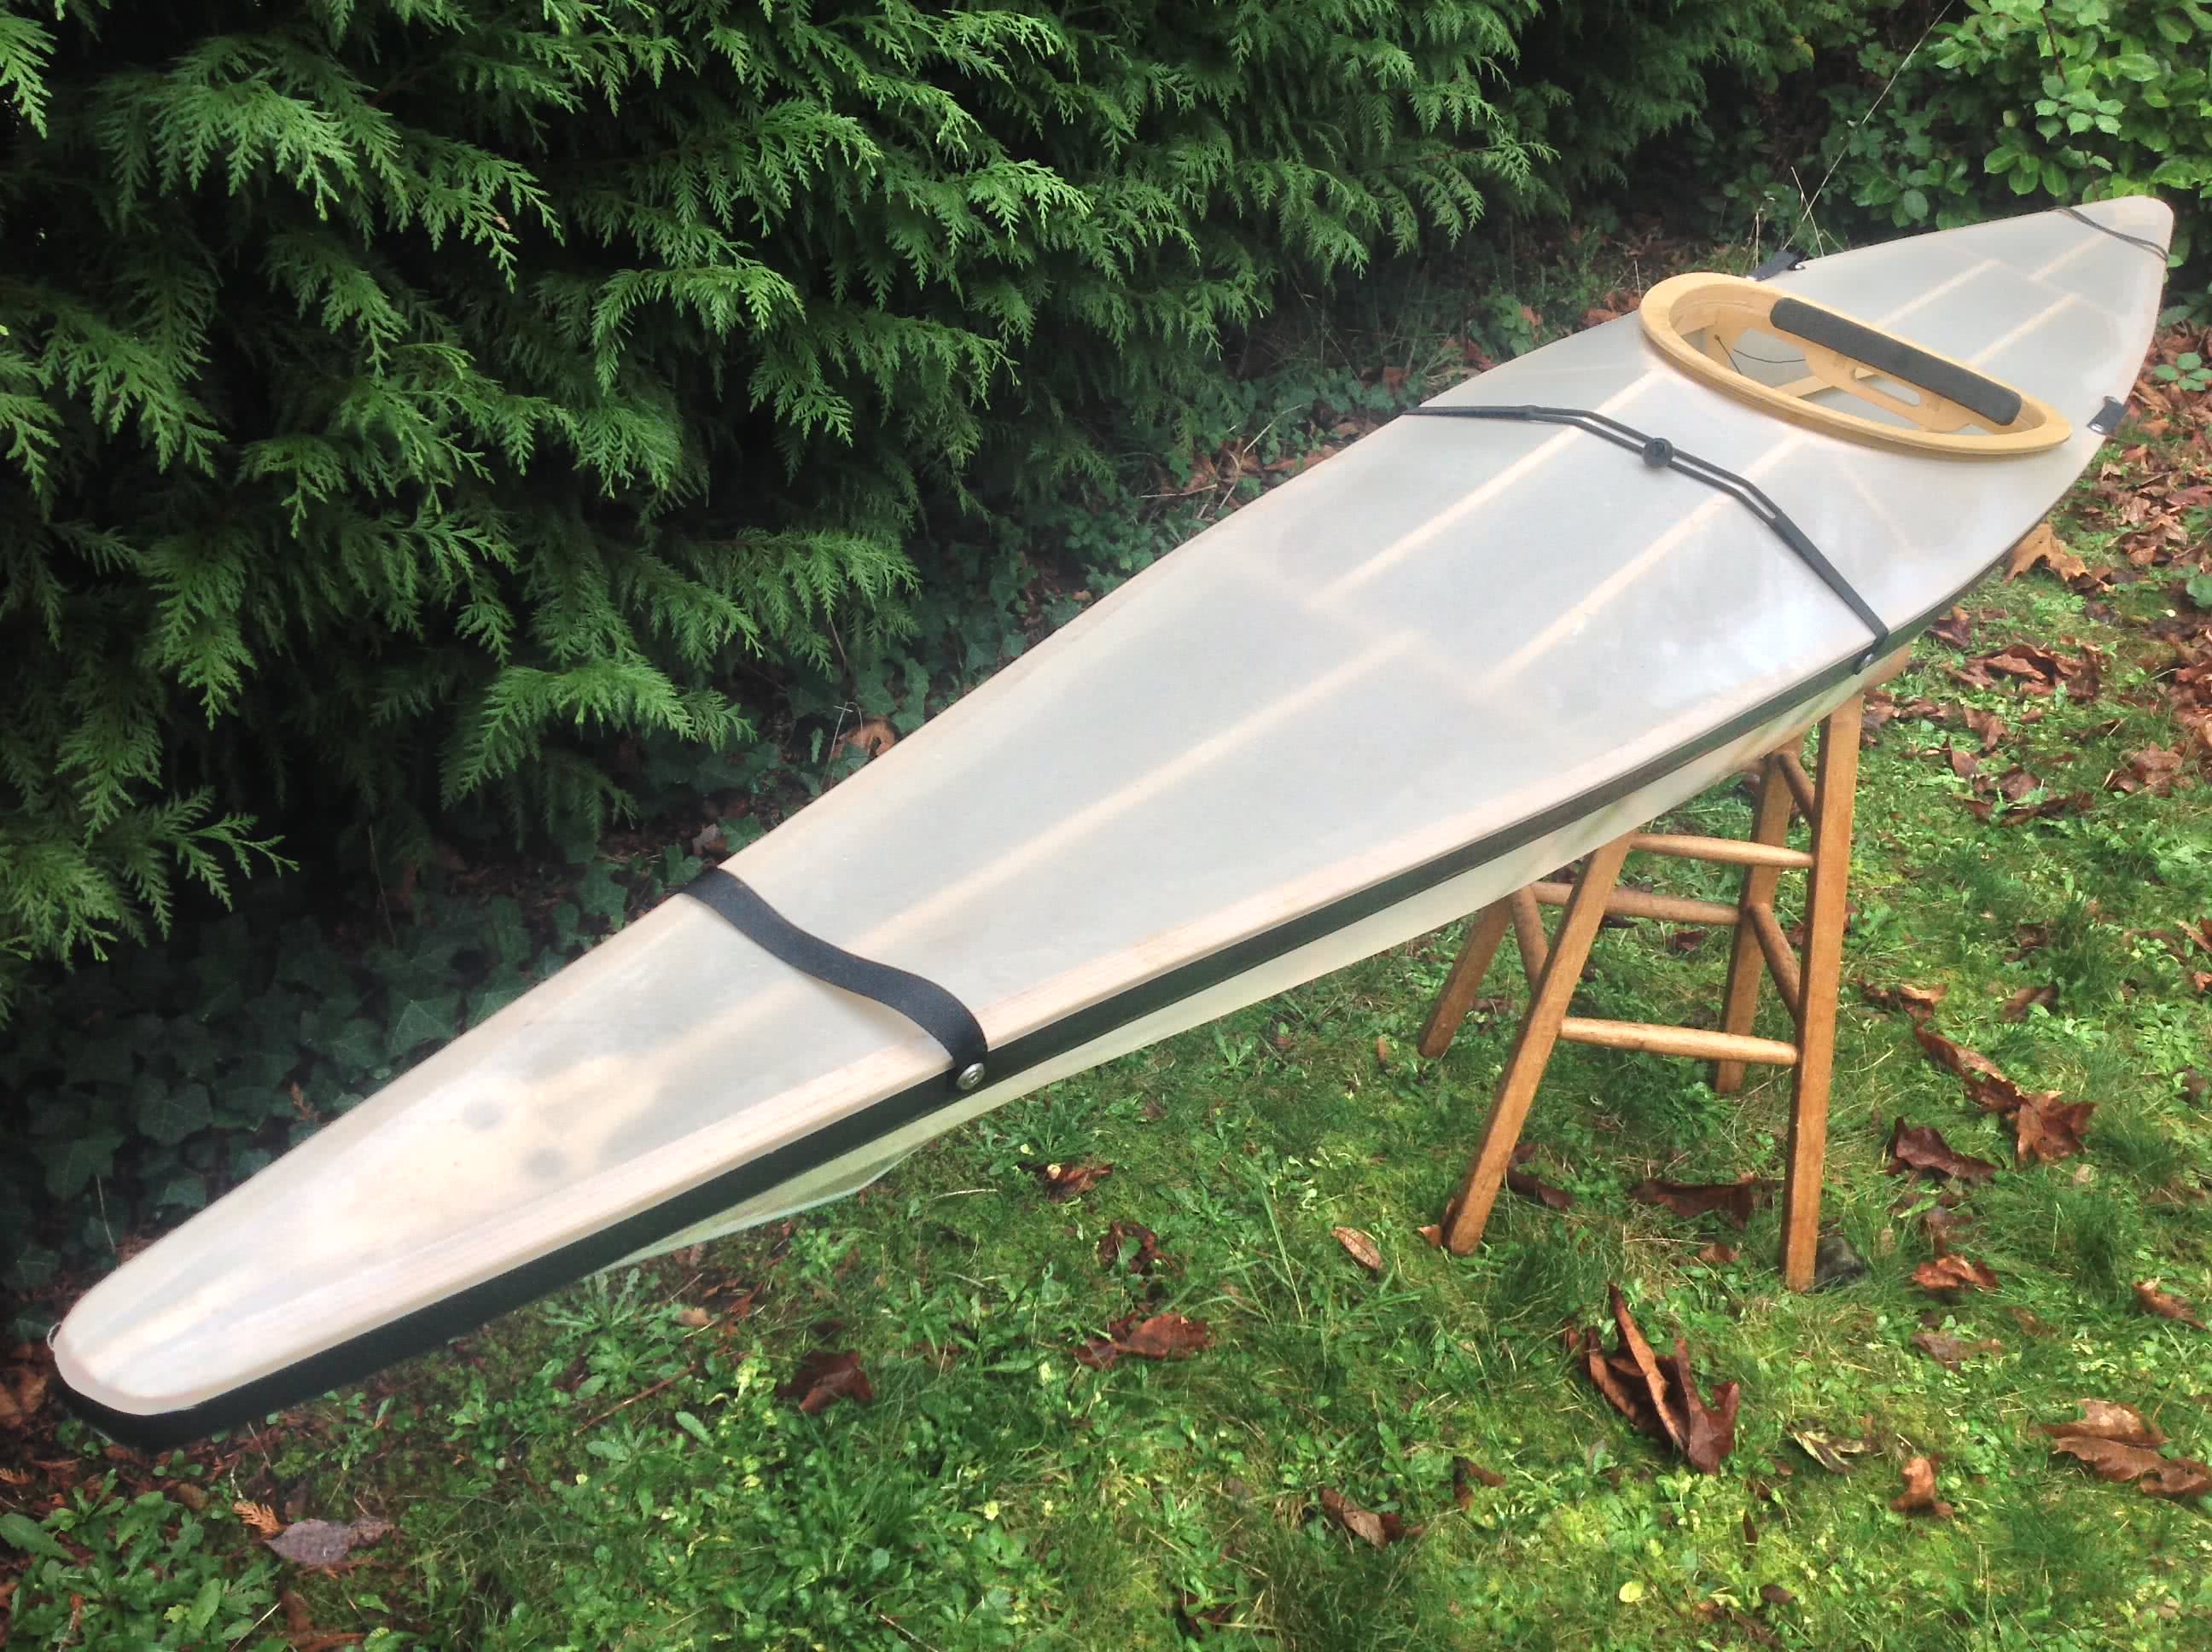 Build Your Own Kayak with a Kayak Kit - Ocean River